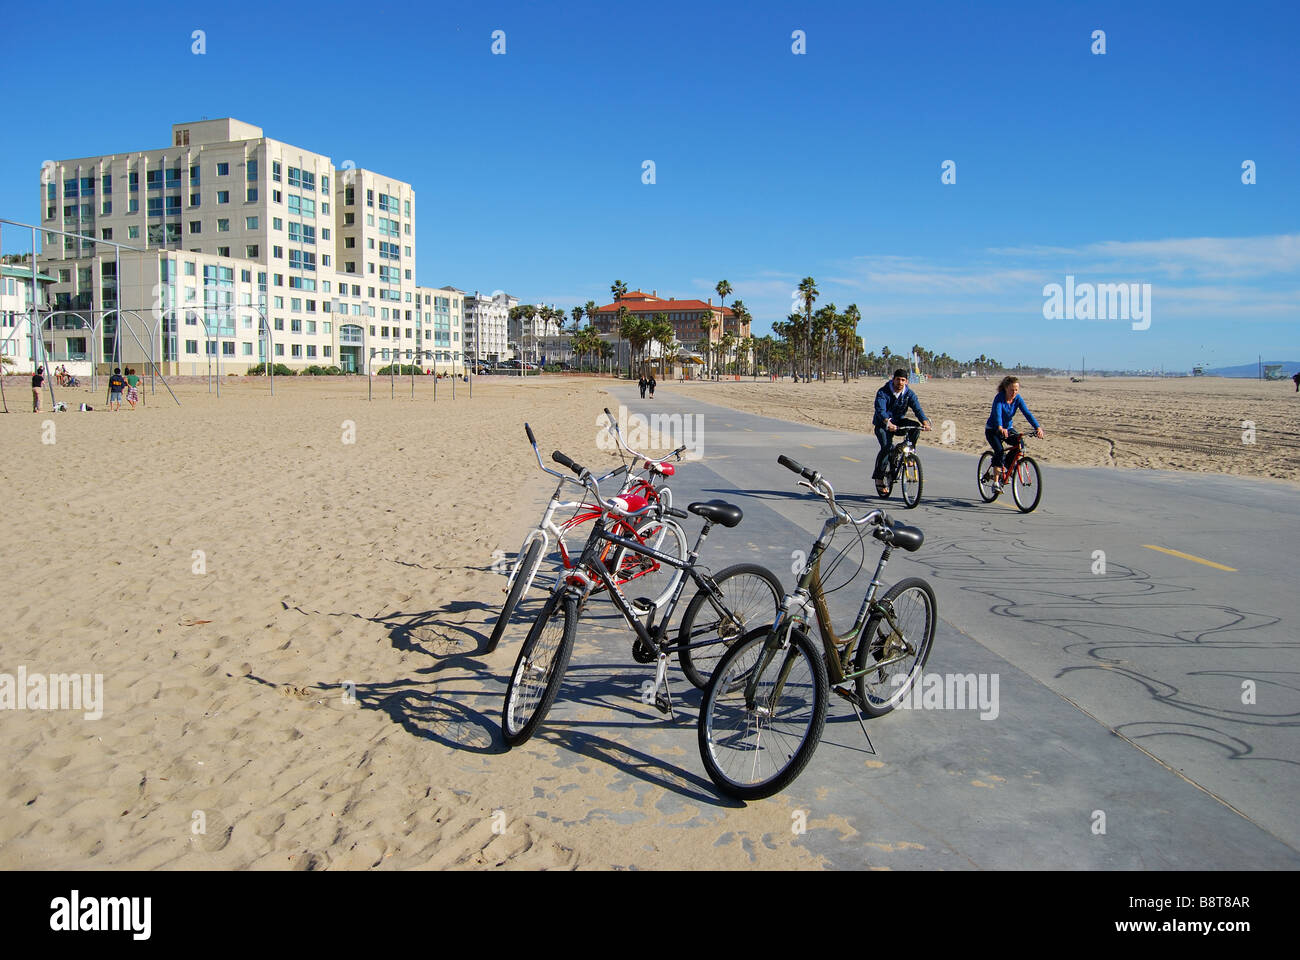 Piste cyclable, de la plage de Santa Monica, Santa Monica, Los Angeles, Californie, États-Unis d'Amérique Banque D'Images